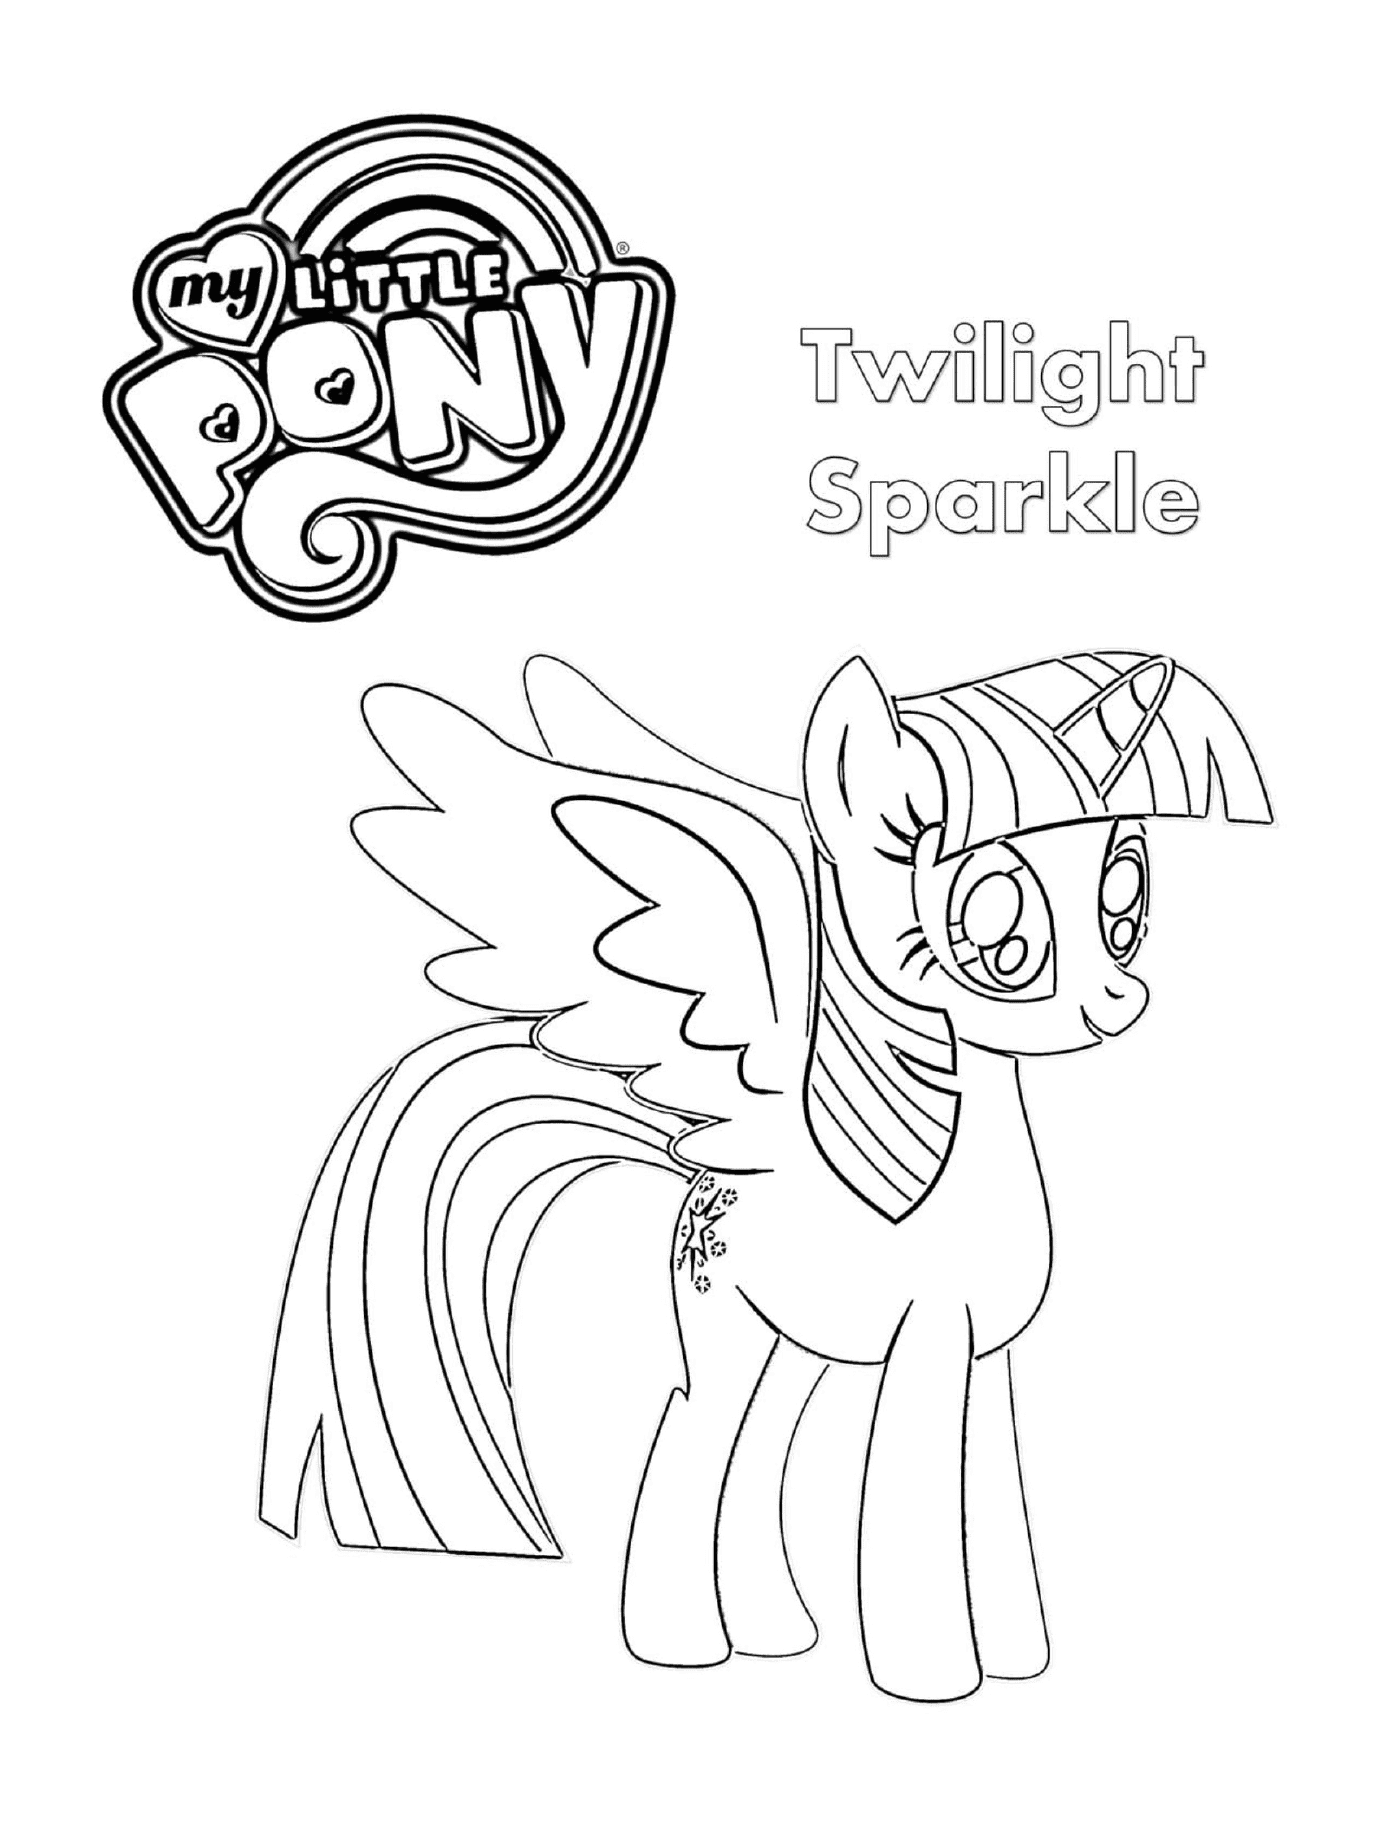  Twilight Sparkle, the pony drawn 